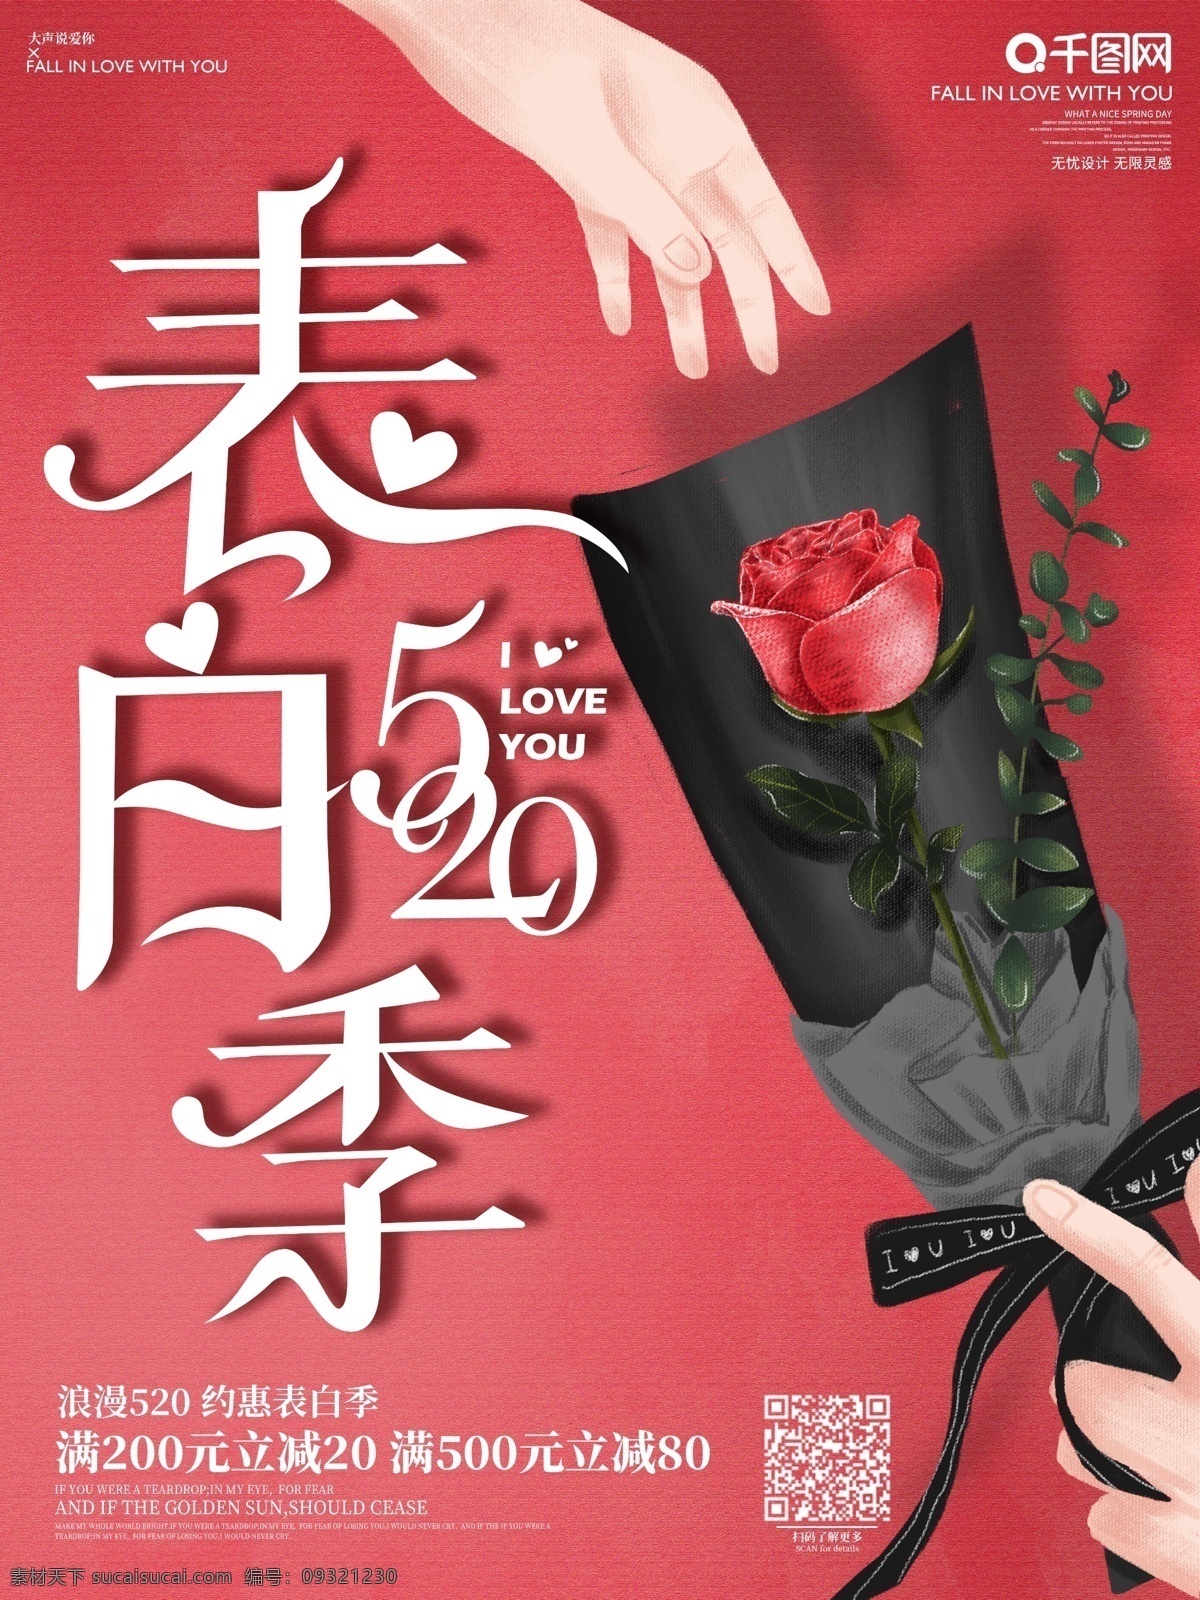 原创 手绘 插画 简约 520 促销 海报 表白 情人节 情侣 宣传 活动 玫瑰花 唯美浪漫 肌理感